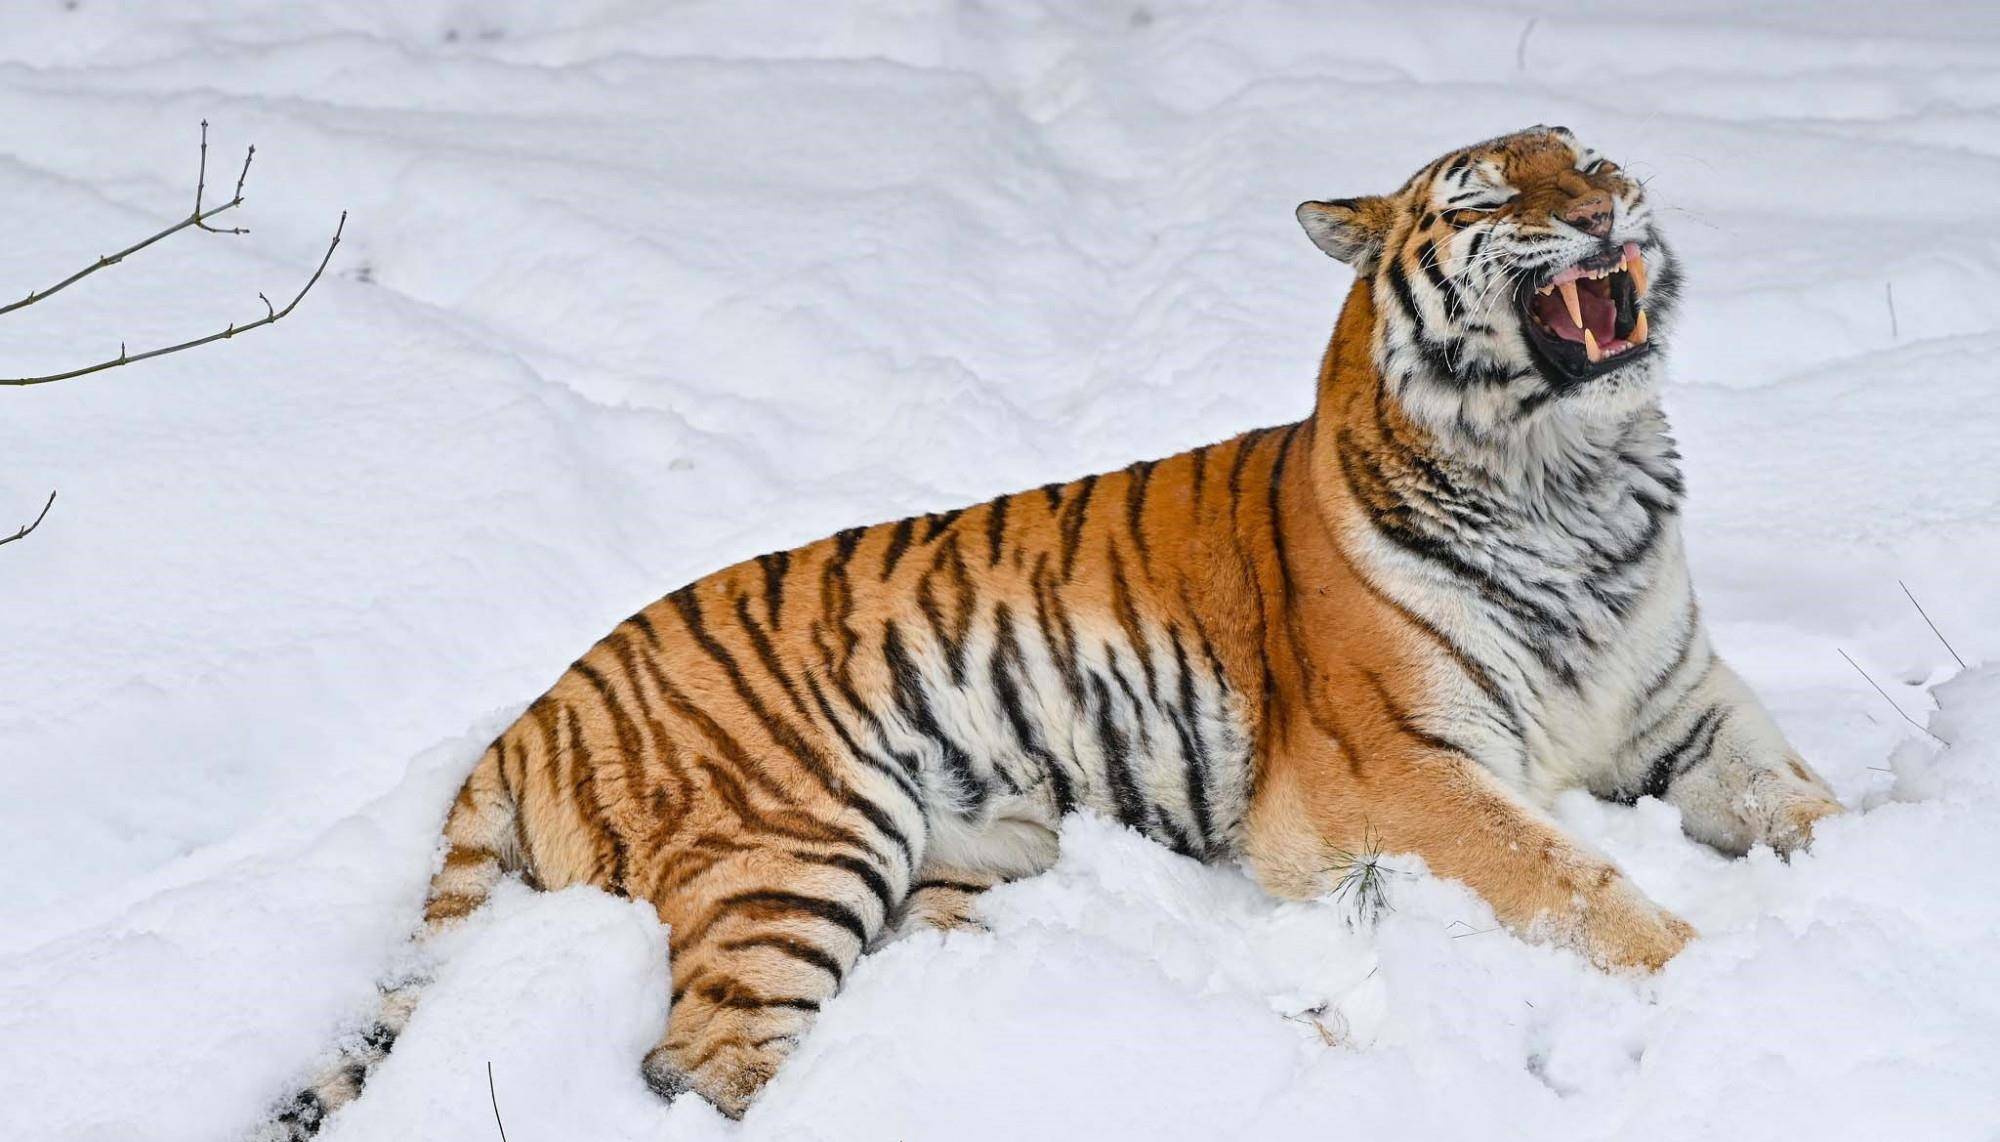 西伯利亚虎雪中显霸气,雪中玩耍的大猫,别有一番景致